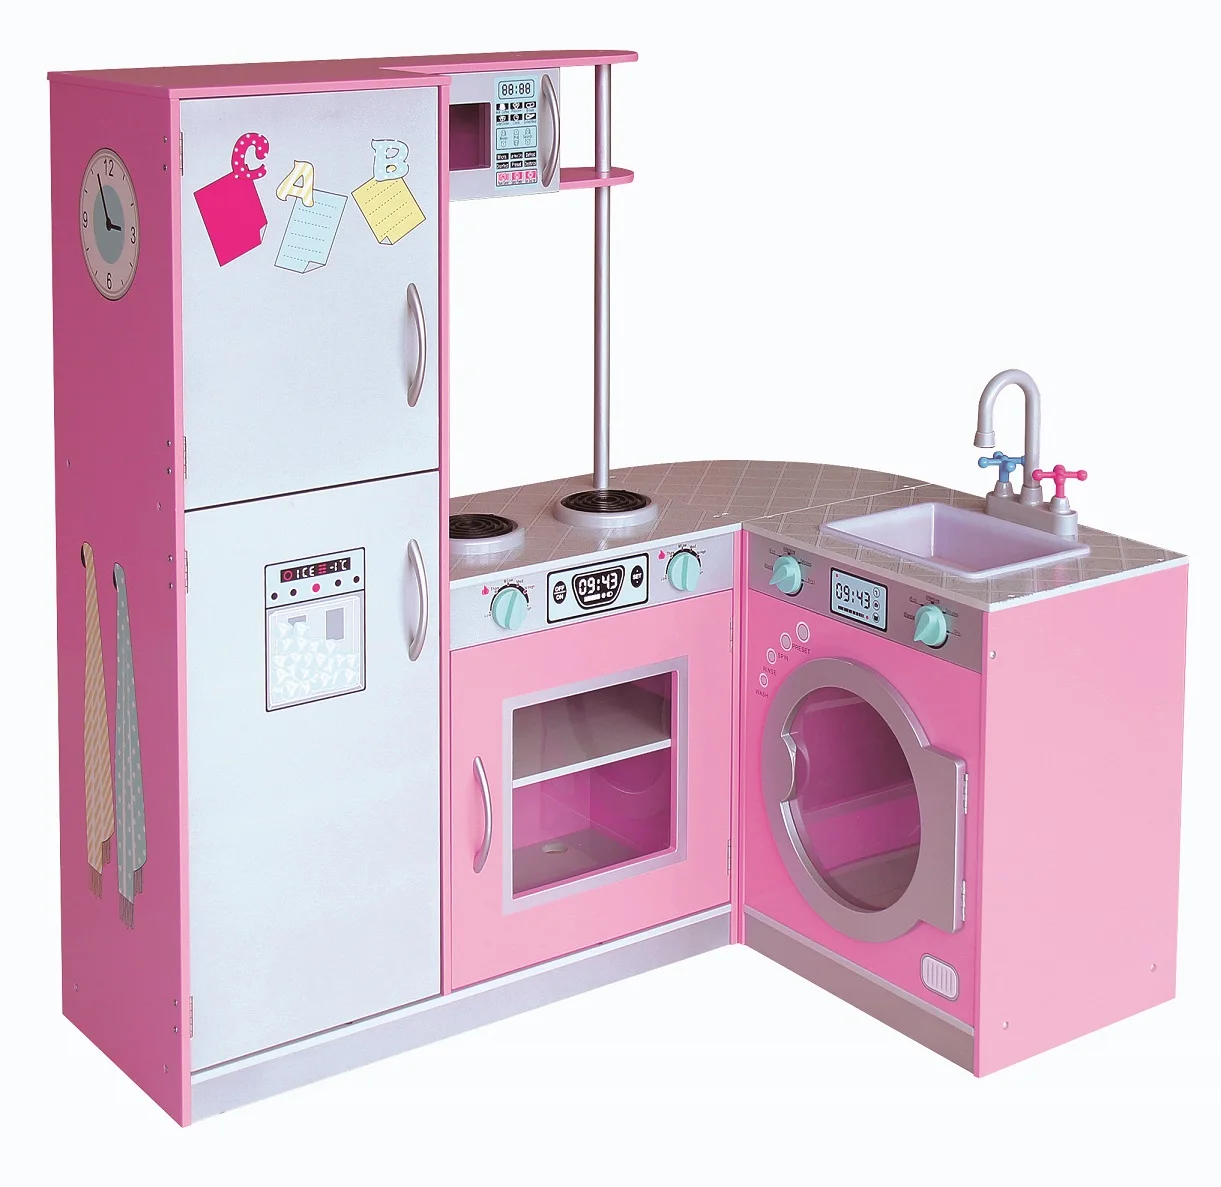 pink wooden kitchen set